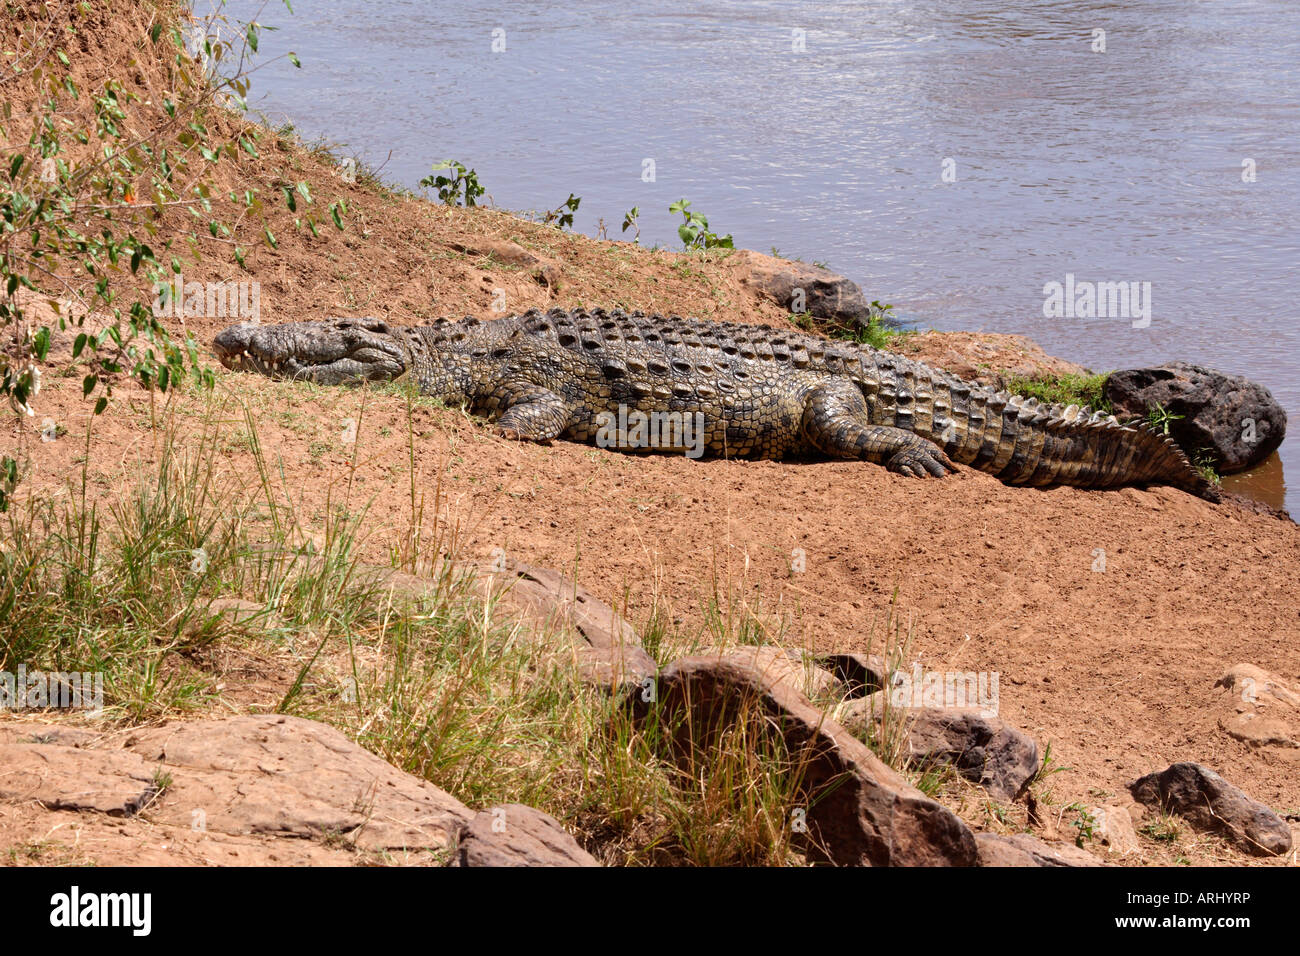 Crocodile du Nil laissant Mara River après passage de gnous Predator Banque D'Images